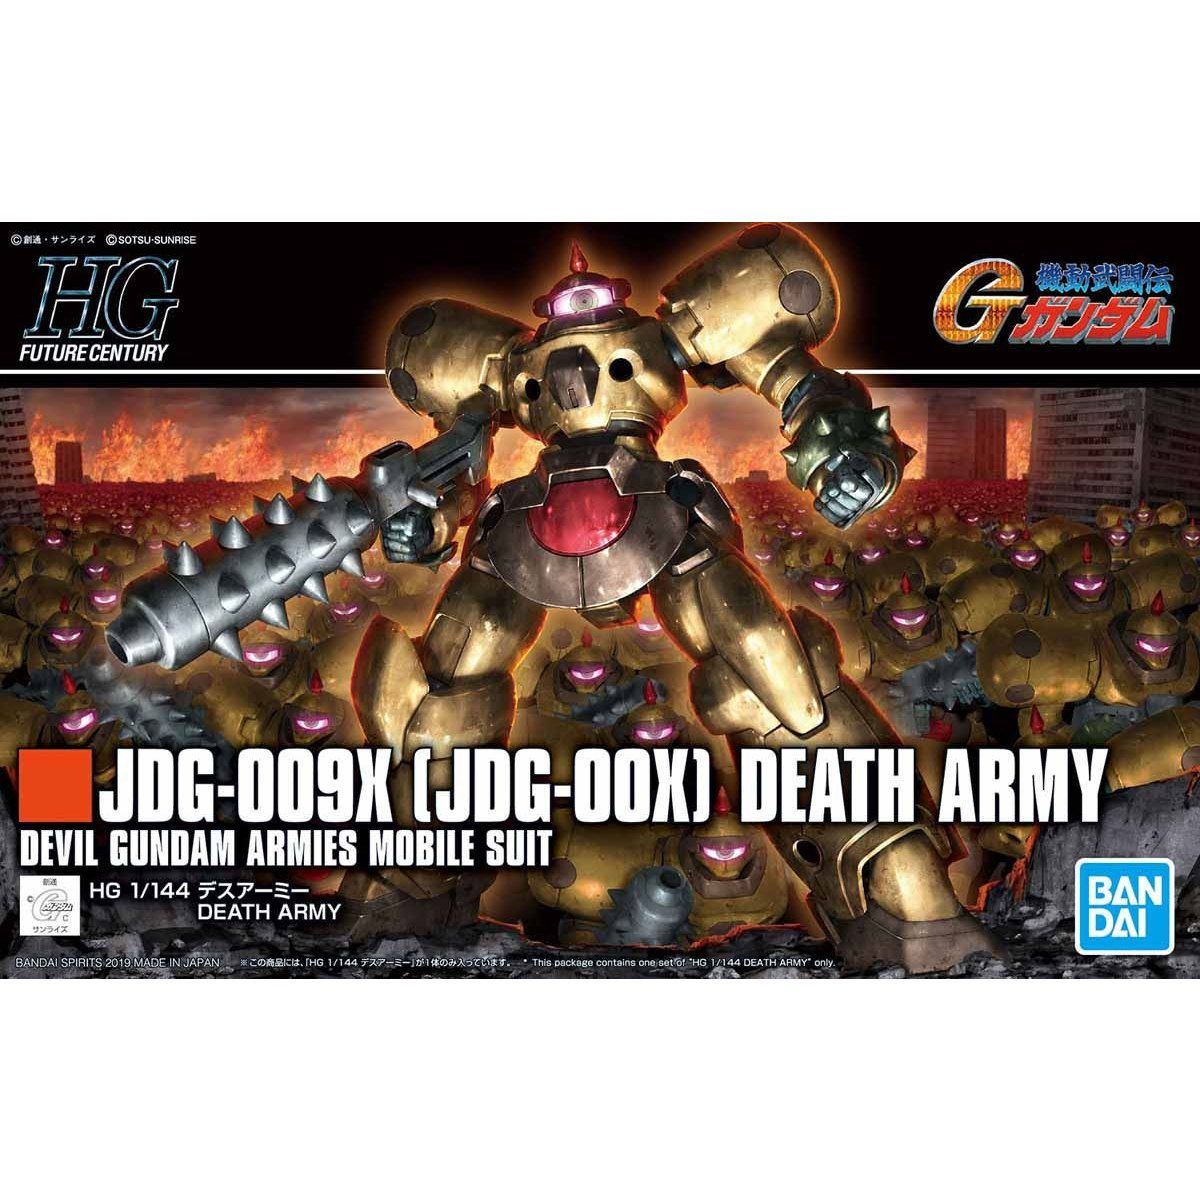 HGFC Death Army